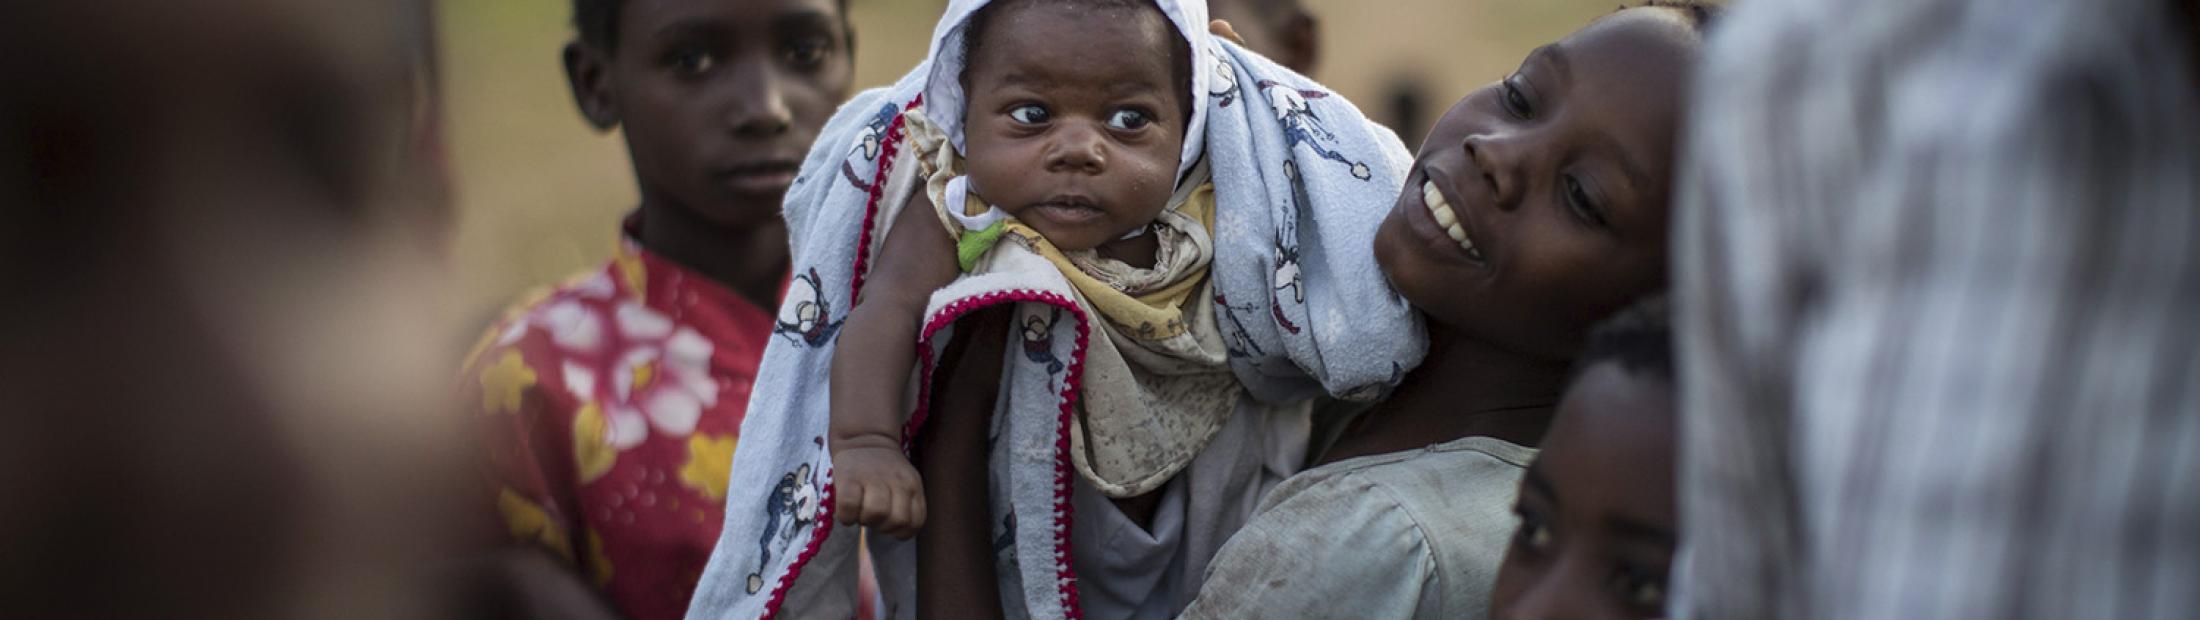 ONG en África, el continente del hambre y la guerra